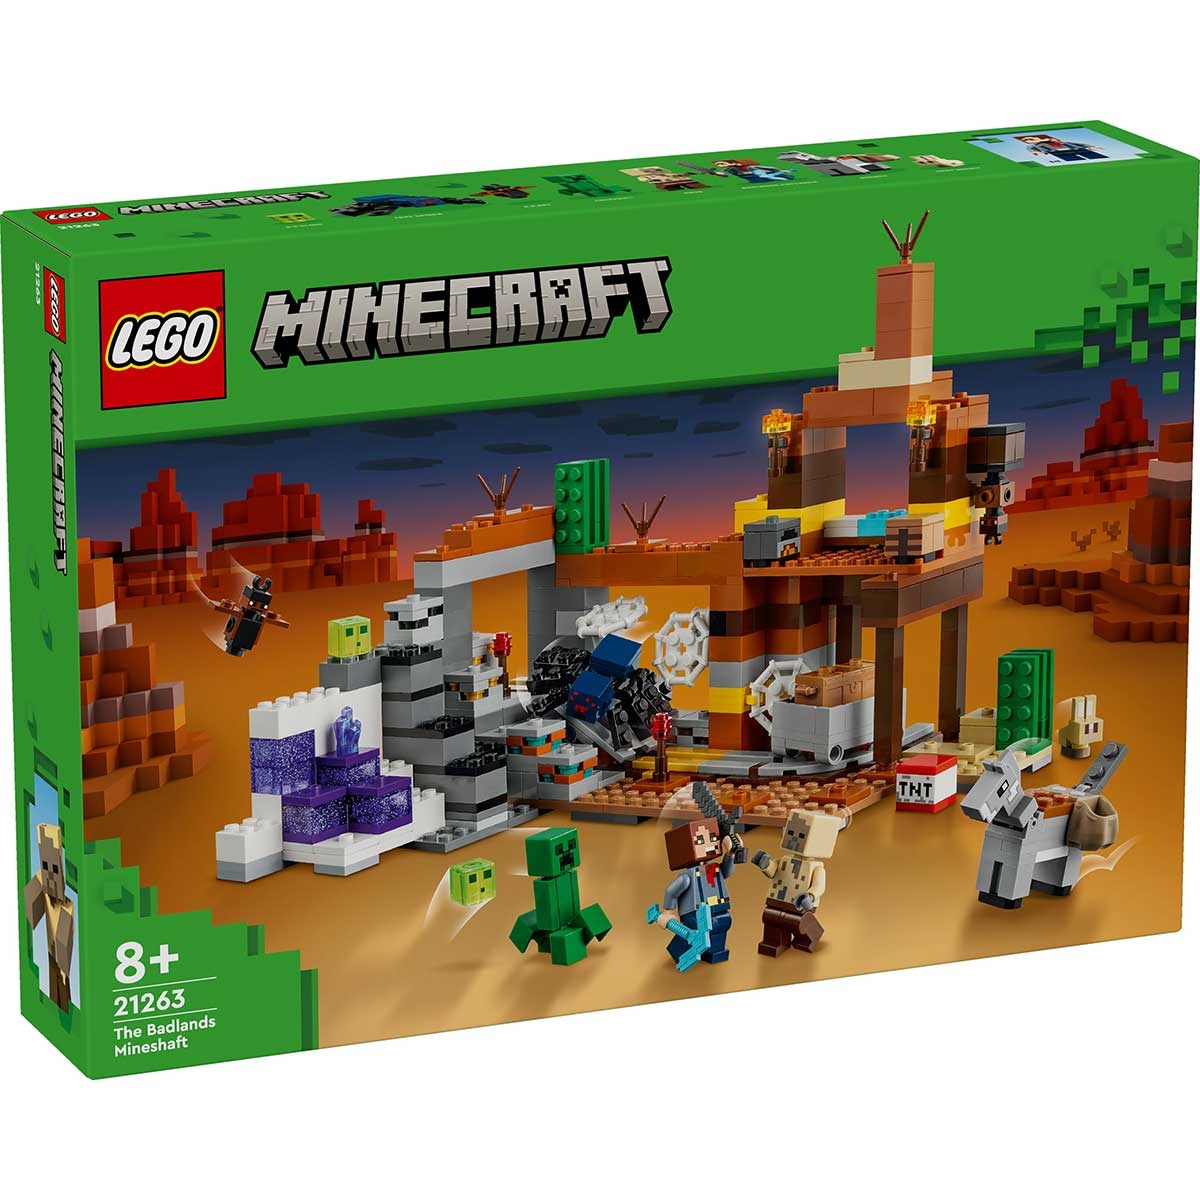 Minecraft La Miniera delle Badlands Modellino da Costruire di Bioma con Personaggi Accessori e Mob Ostili Giochi Creativi per Bambini e Bambine da 8 Anni Idea Regalo di Compleanno 21263